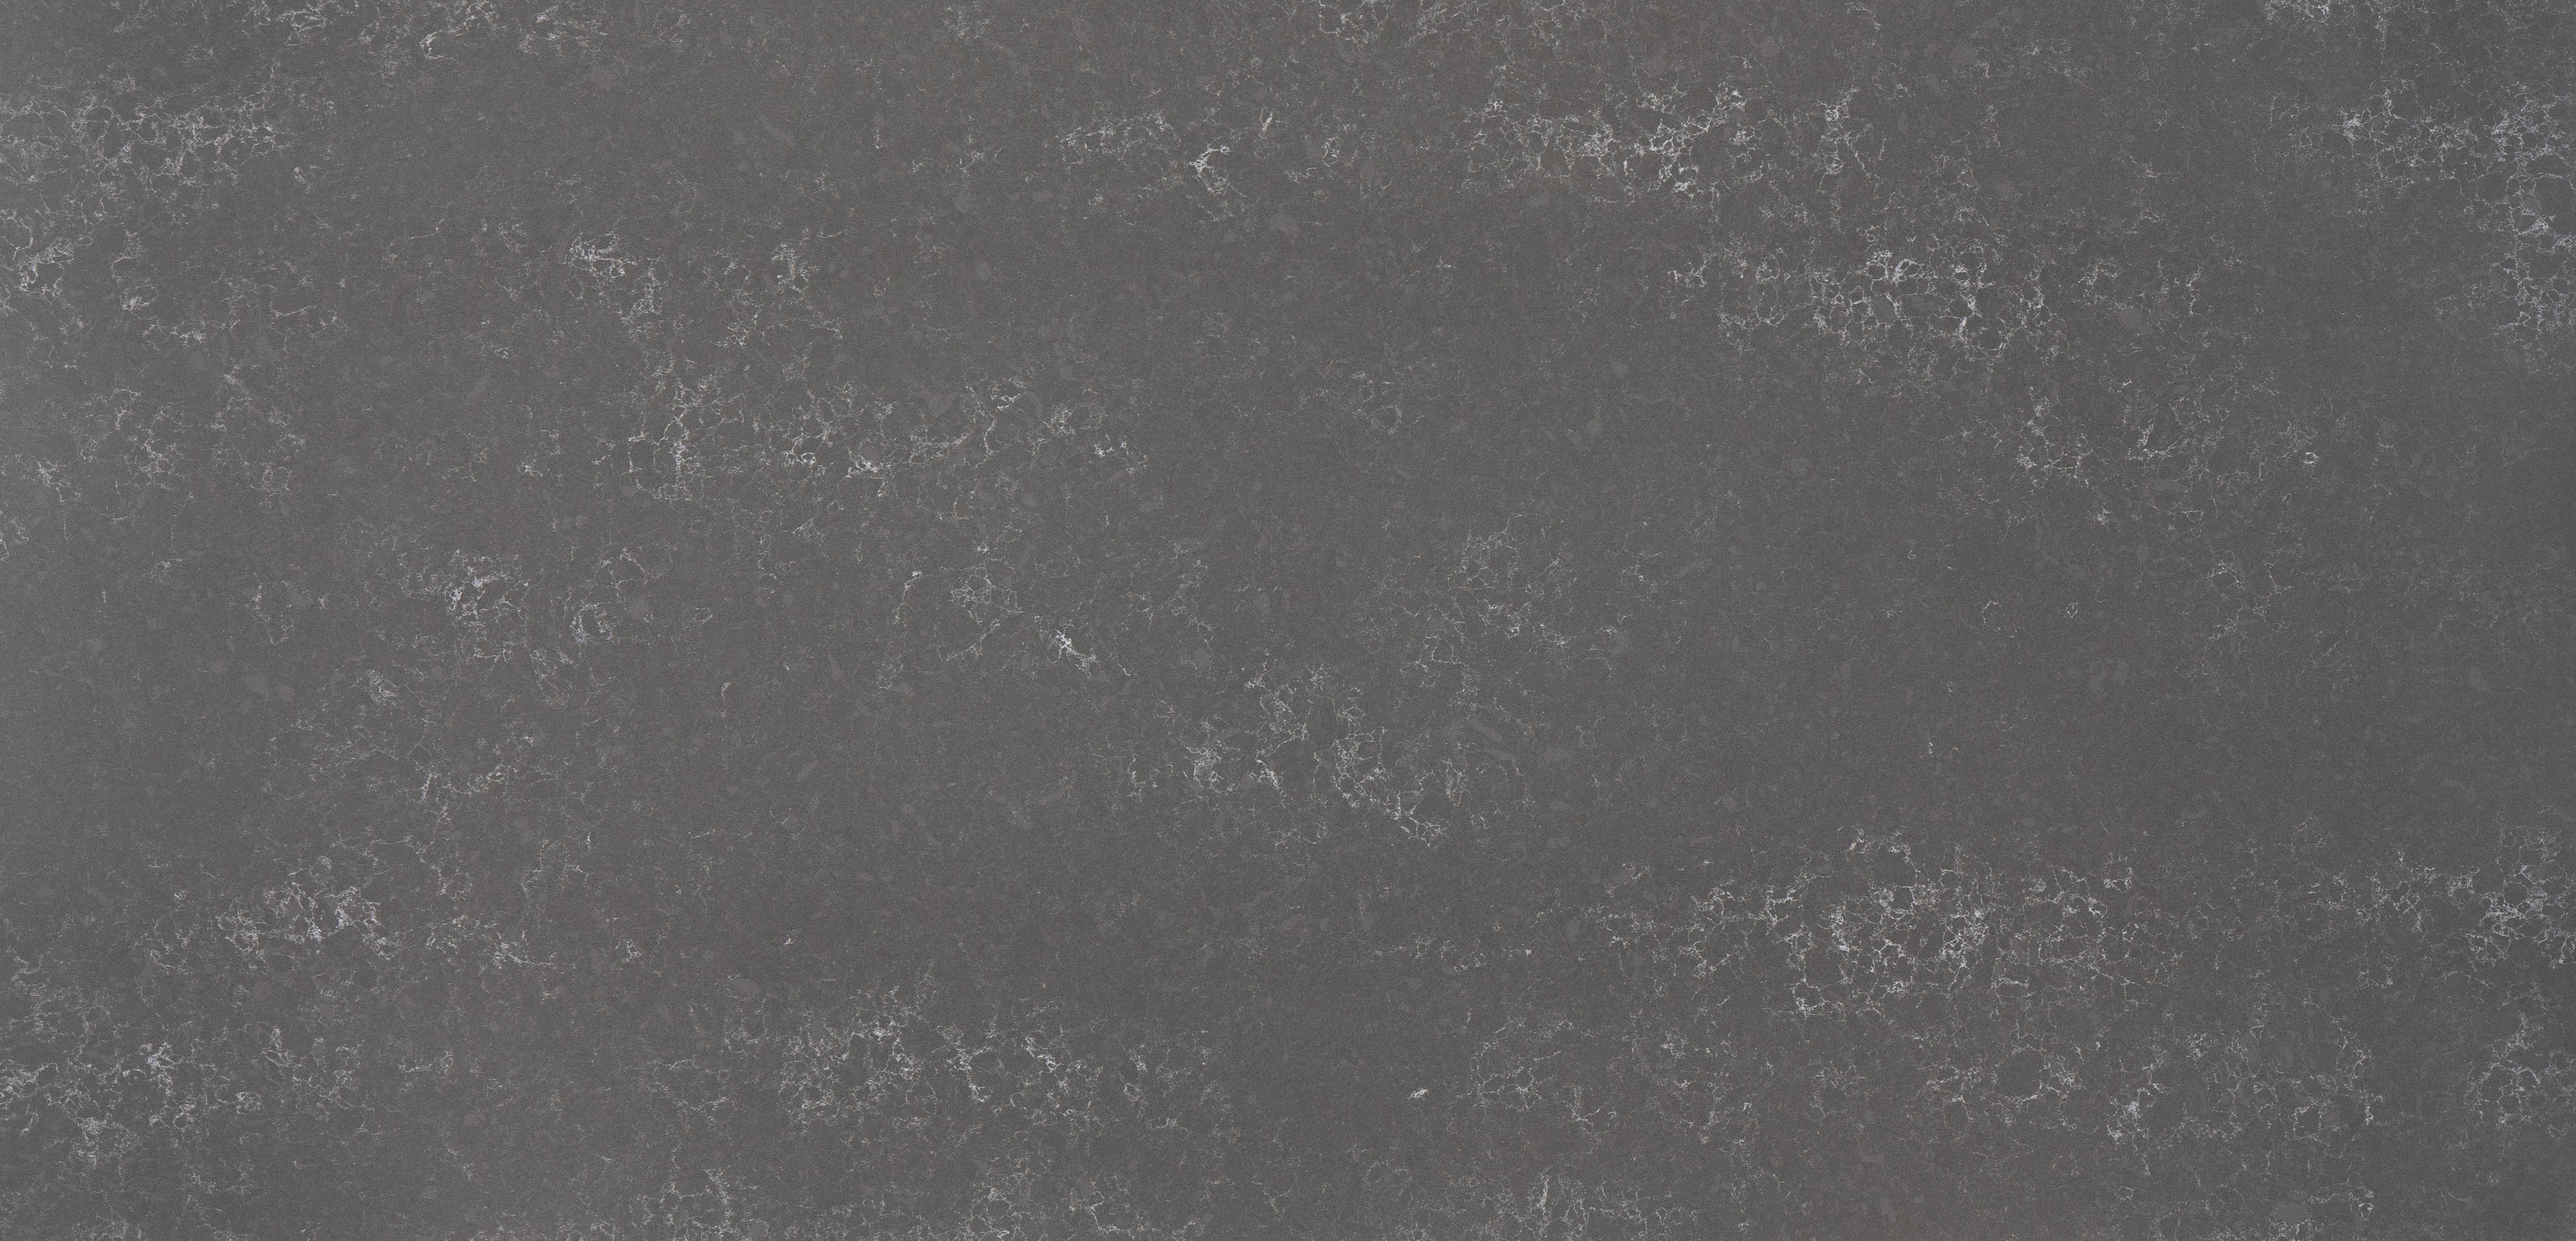 HanStone Quartz Embrace warm medium tone quartz countertop surface subtle veining full slab